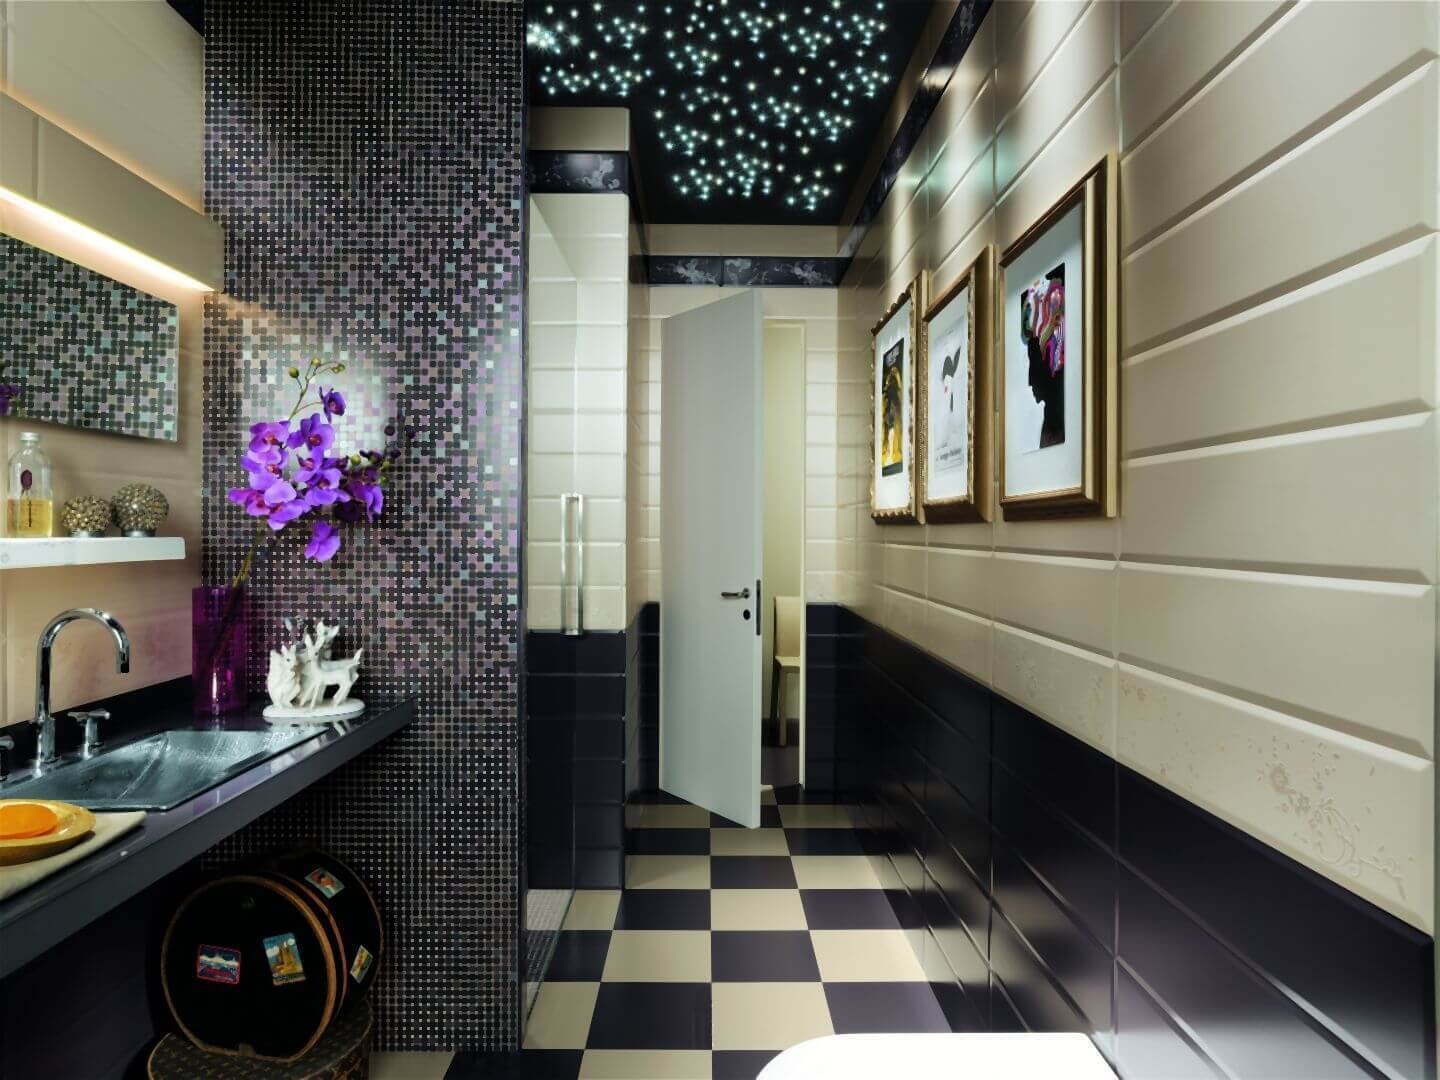 Fap site. Ванная с мозаикой. Сочетание плитки и мозаики. Сочетание мозаики и плитки в ванной. Мозаика в интерьере ванной комнаты.